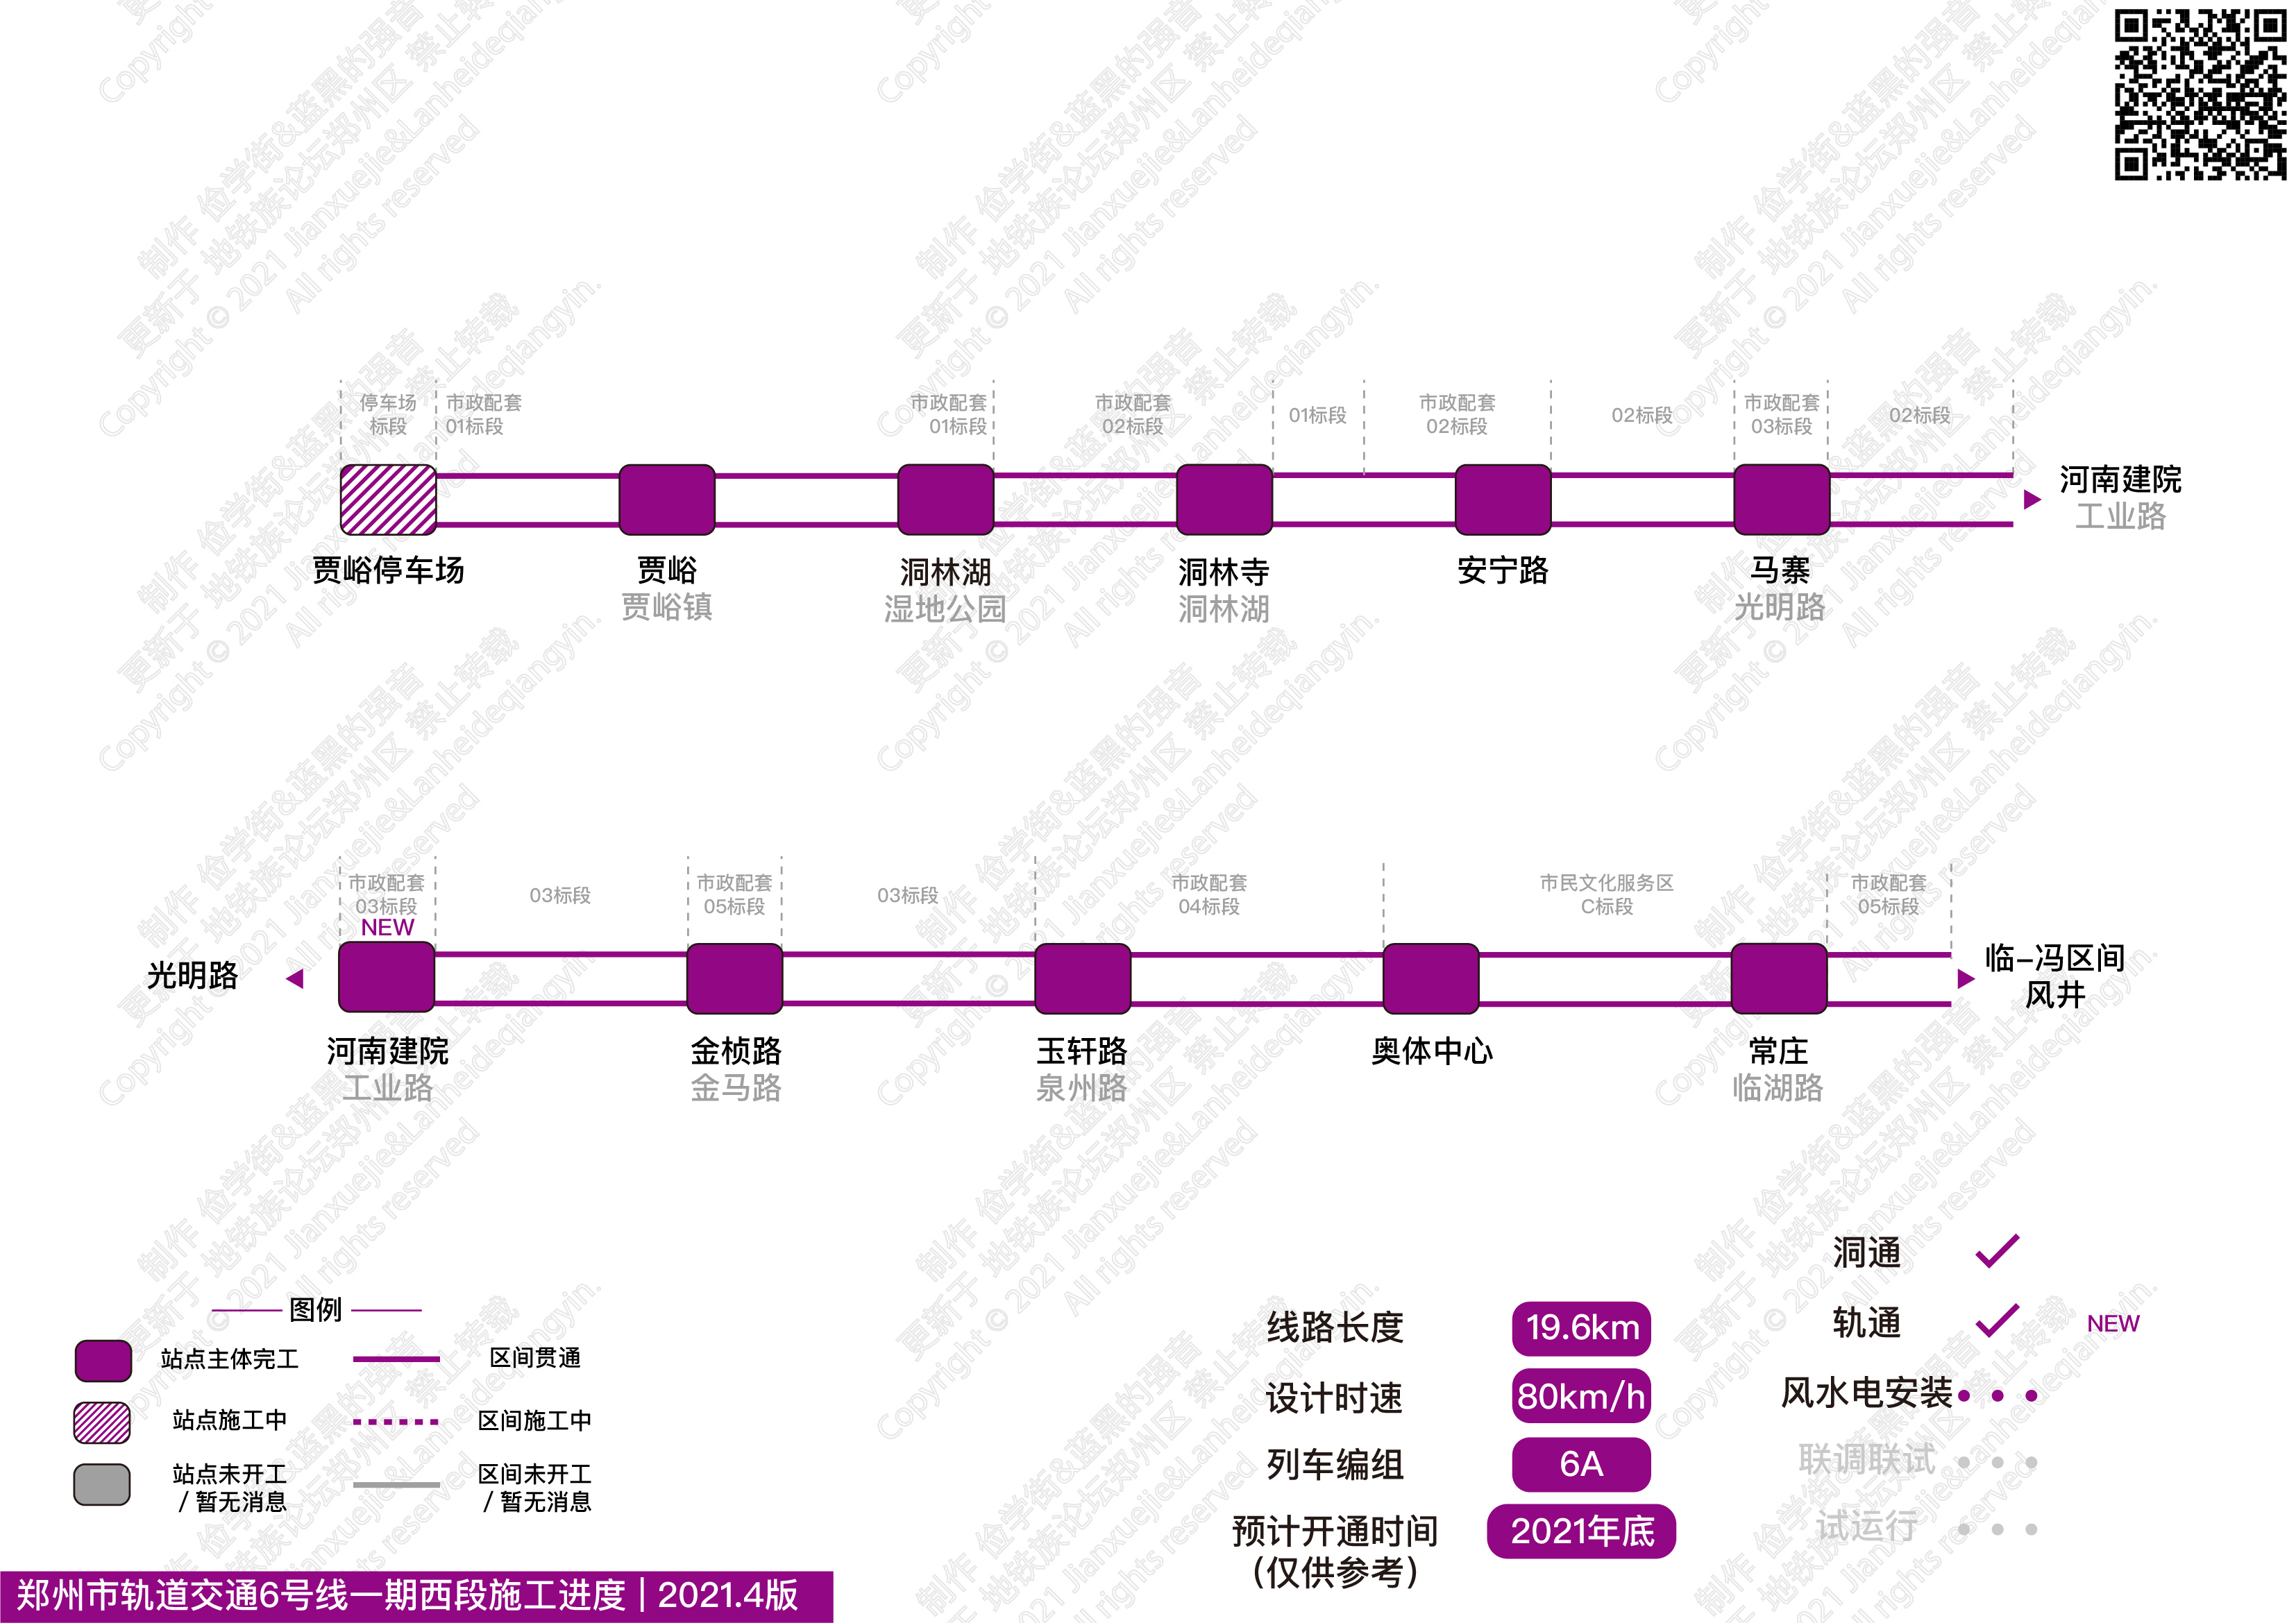 郑州地铁每月进度更新-2021.4 版